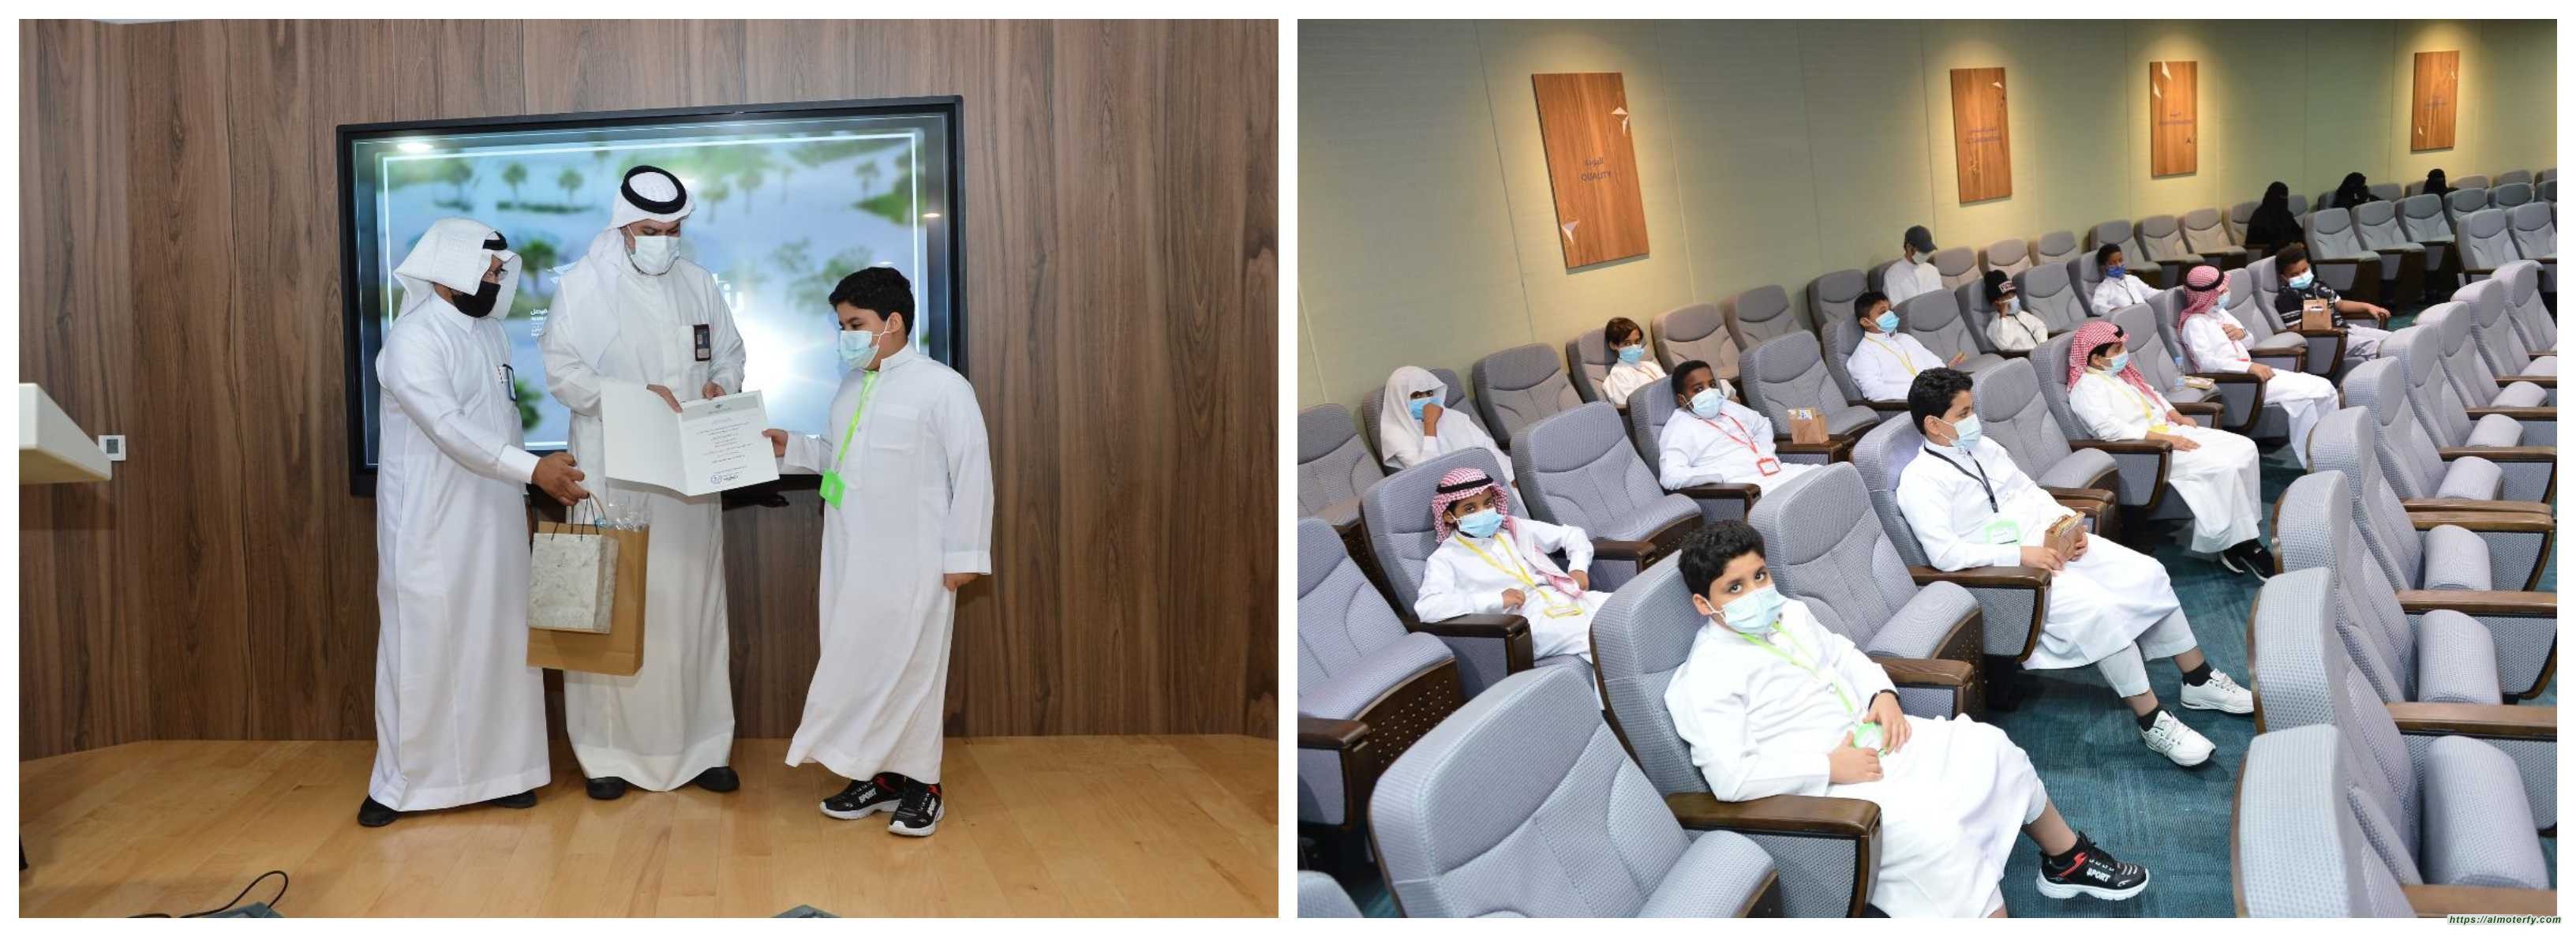 ضمن برامج أخرى في المسؤولية المجتمعية جامعة الإمام عبد الرحمن بن فيصل وجمعية "بناء" تحتفلان بتخريج 17 طالبا يتيما من برنامج تدريبي في الحاسب